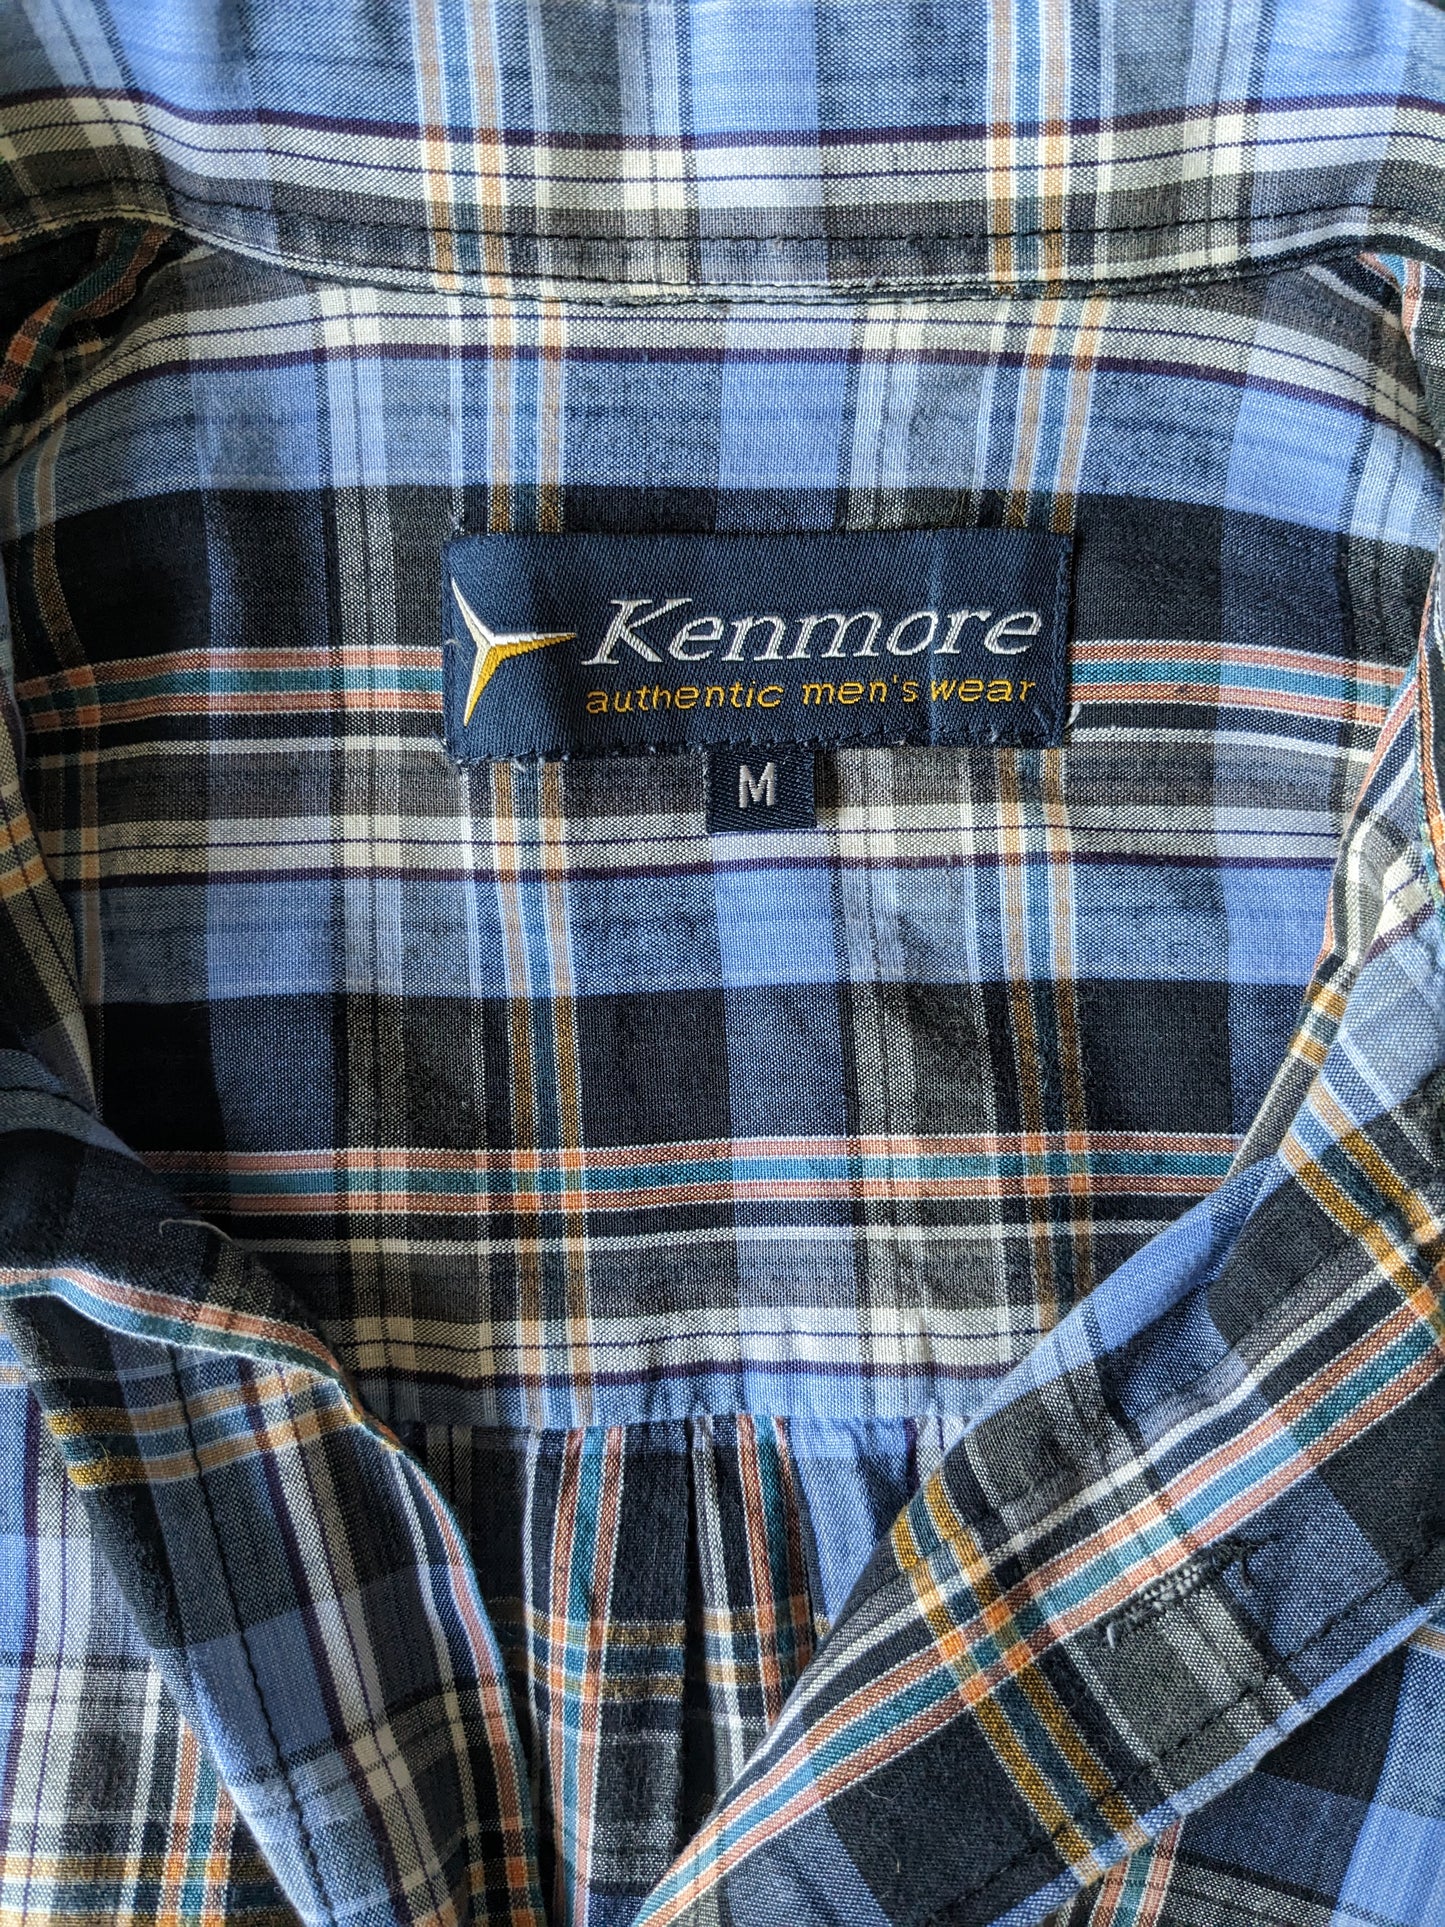 Manica corta con camicia Kenmore vintage. Arancia blu controllata. Taglia M / L.